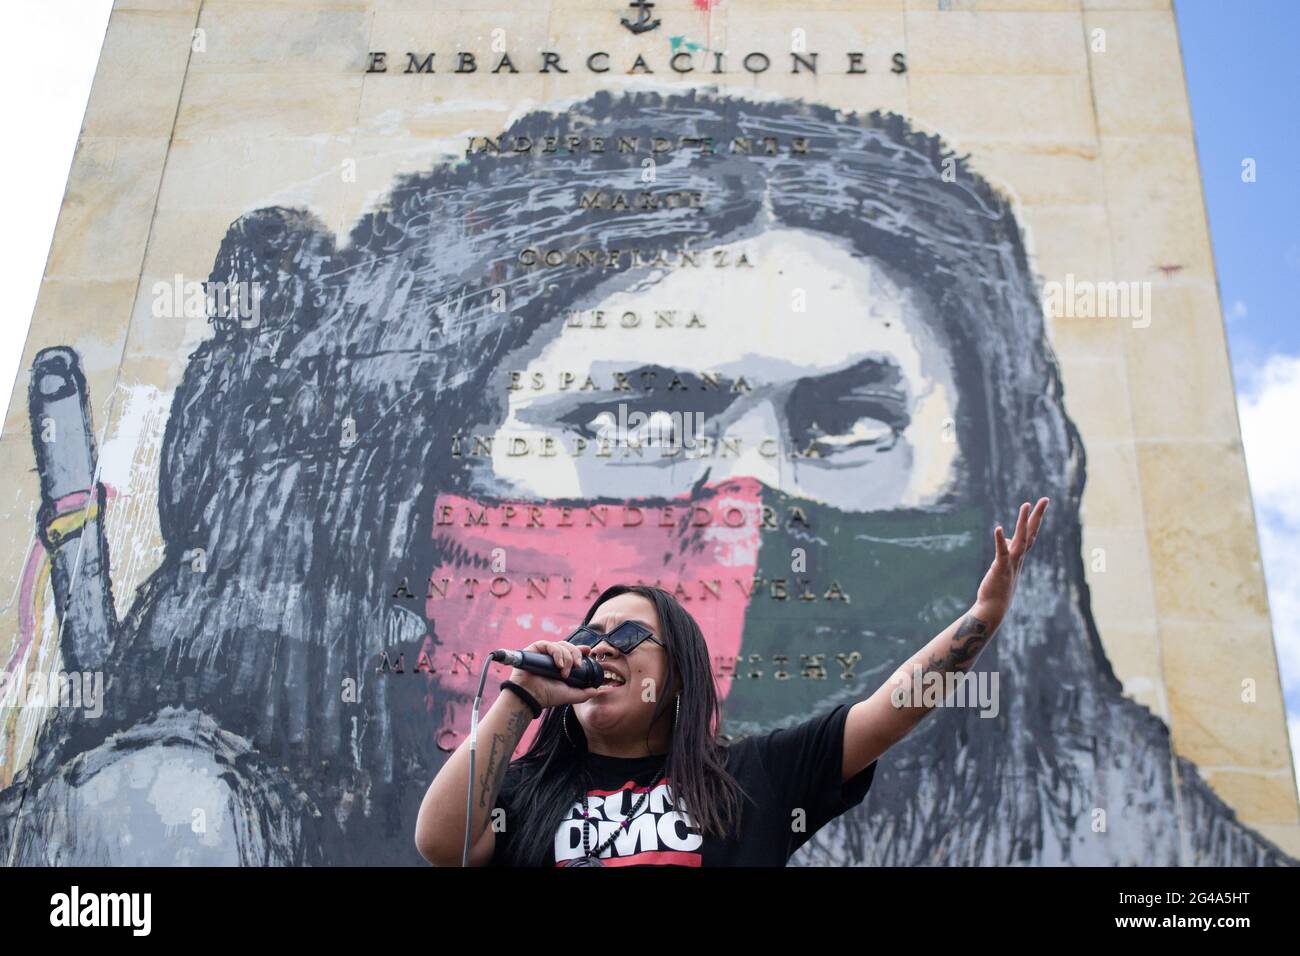 Au milieu de manifestations antigouvernementales, une présentatrice s'annonce lors d'un concert de rap à Bogota, en Colombie, le 19 juin 2021 Banque D'Images